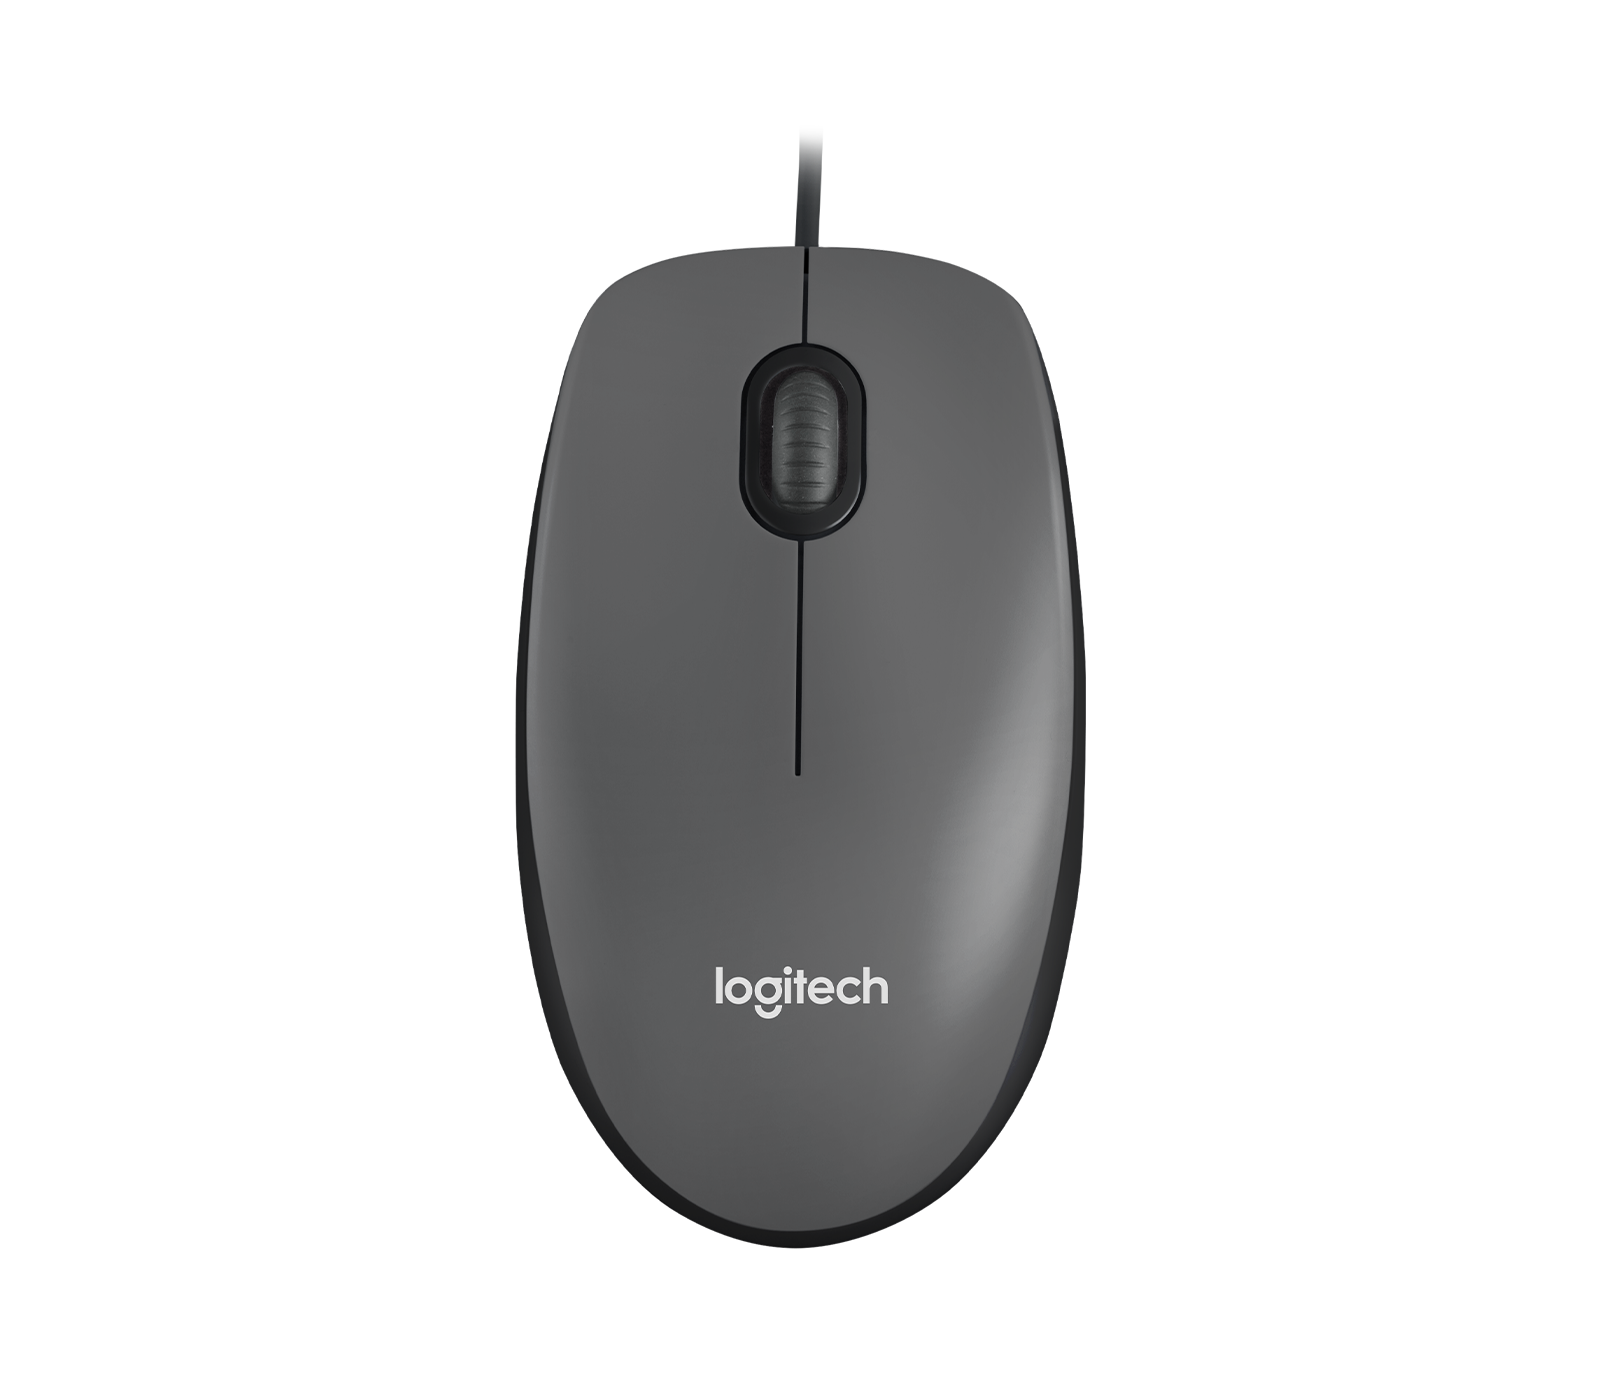 Logitech M100 Optical USB Mouse Ambidextrous Design